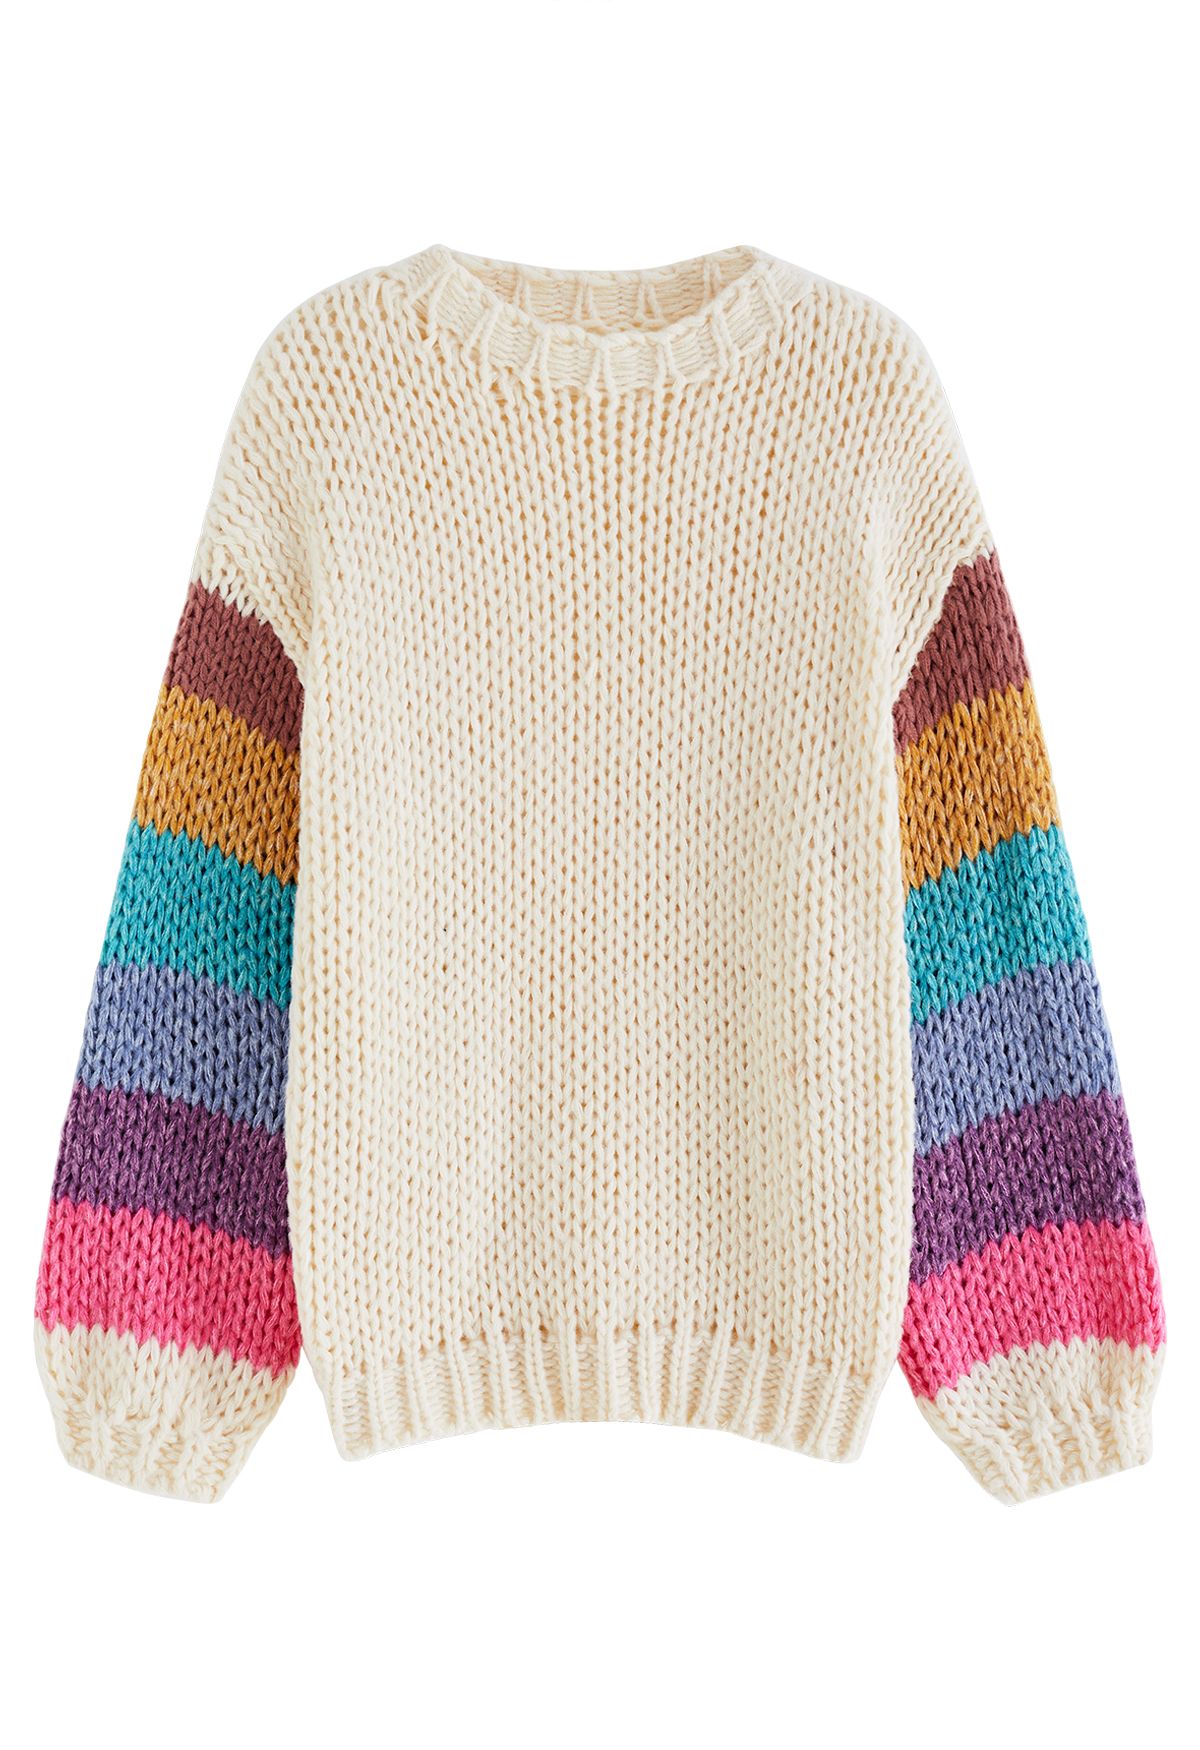 Suéter tricotado à mão Colorblock